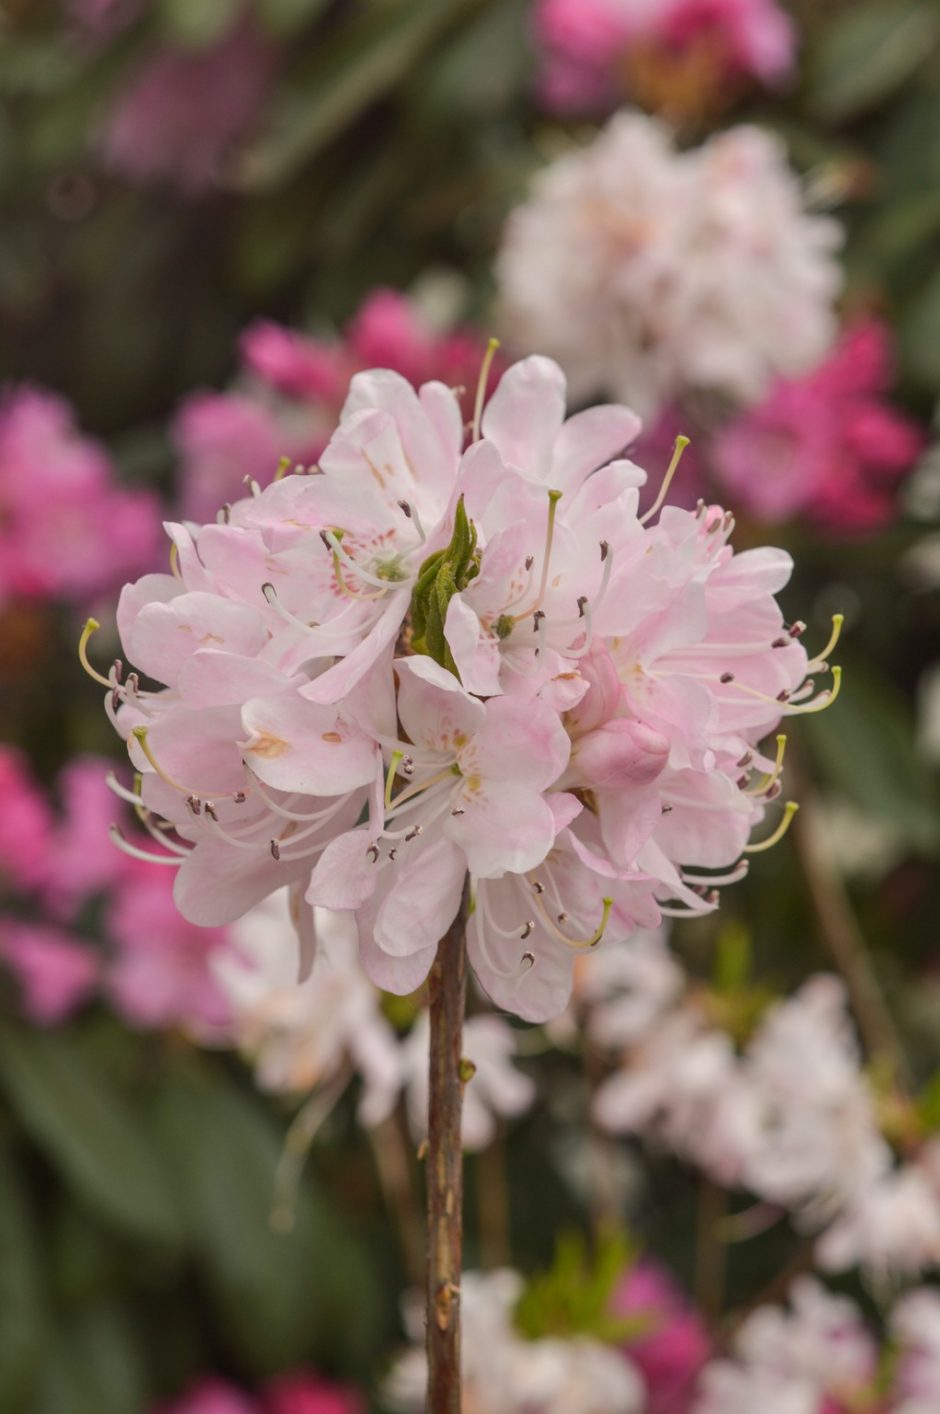 Į Botanikos sodą – gėrėtis gausiai sužydusiais rododendrais